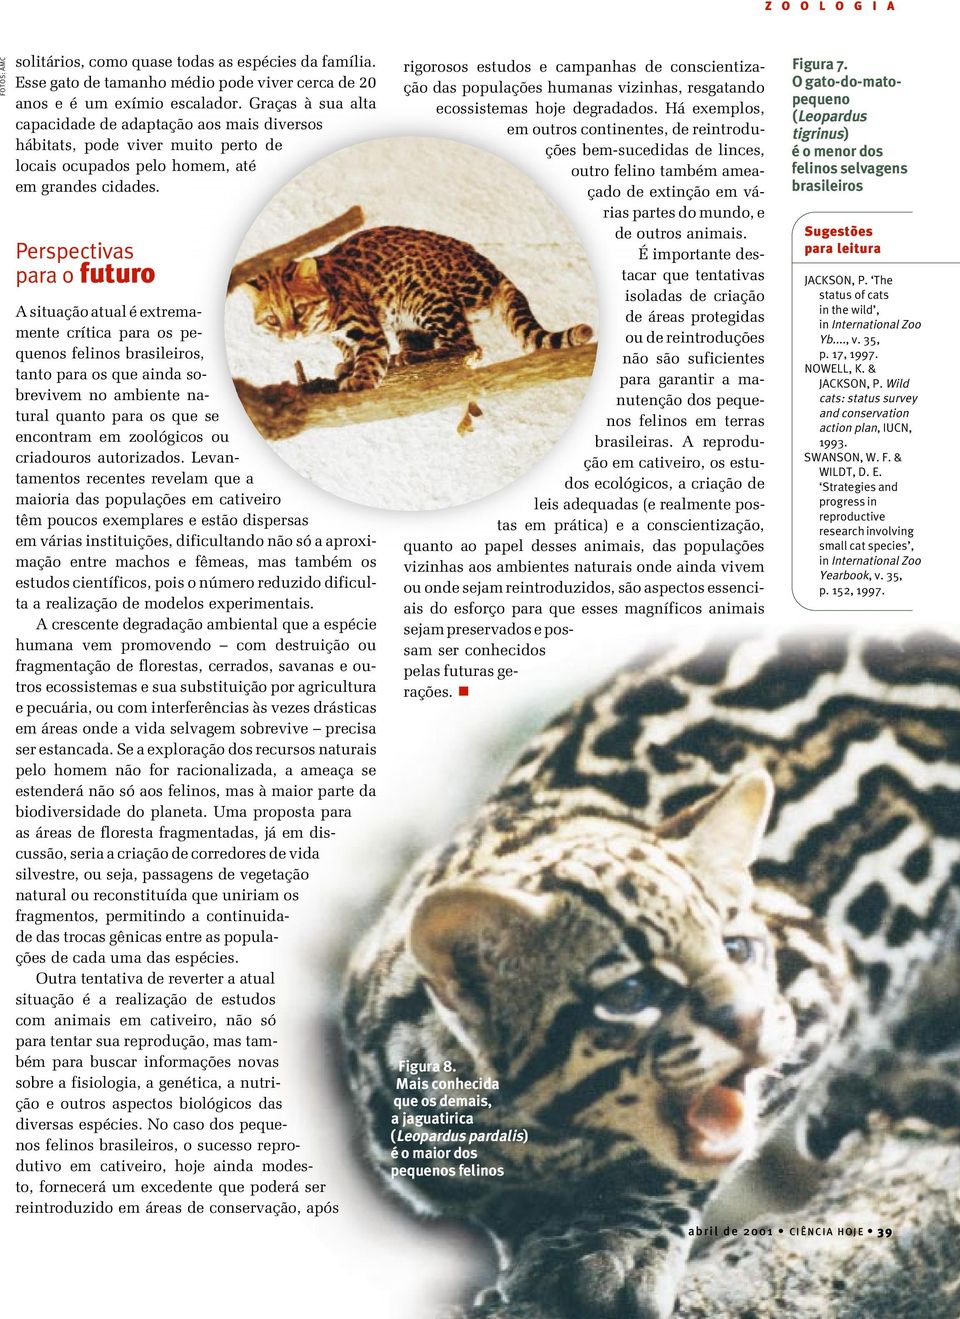 Perspectivas para o futuro A situação atual é extremamente crítica para os pequenos felinos brasileiros, tanto para os que ainda sobrevivem no ambiente natural quanto para os que se encontram em